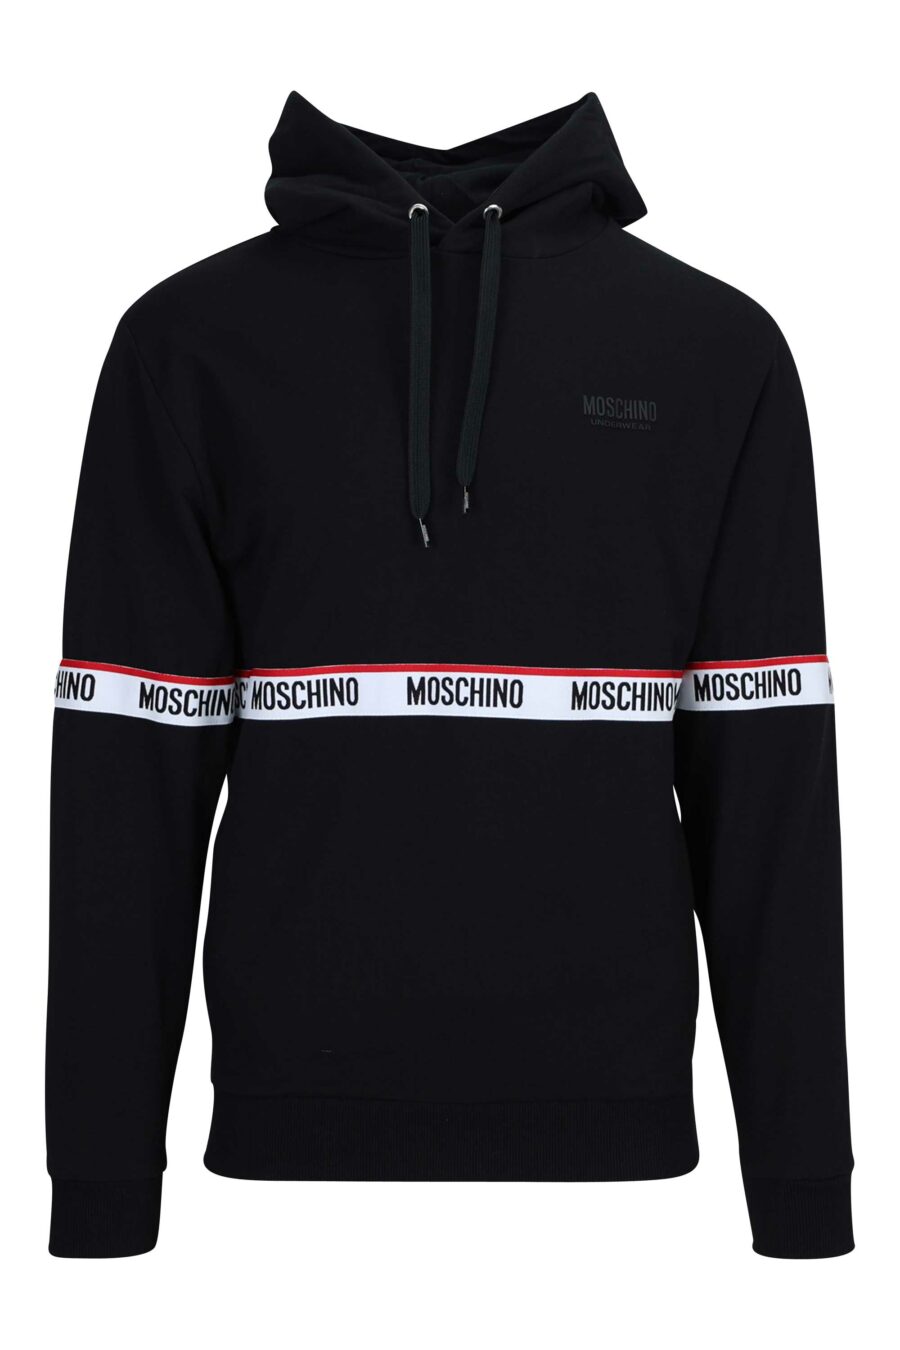 Schwarzes Sweatshirt mit Kapuze und Logo auf zentralem Band - 667113012506